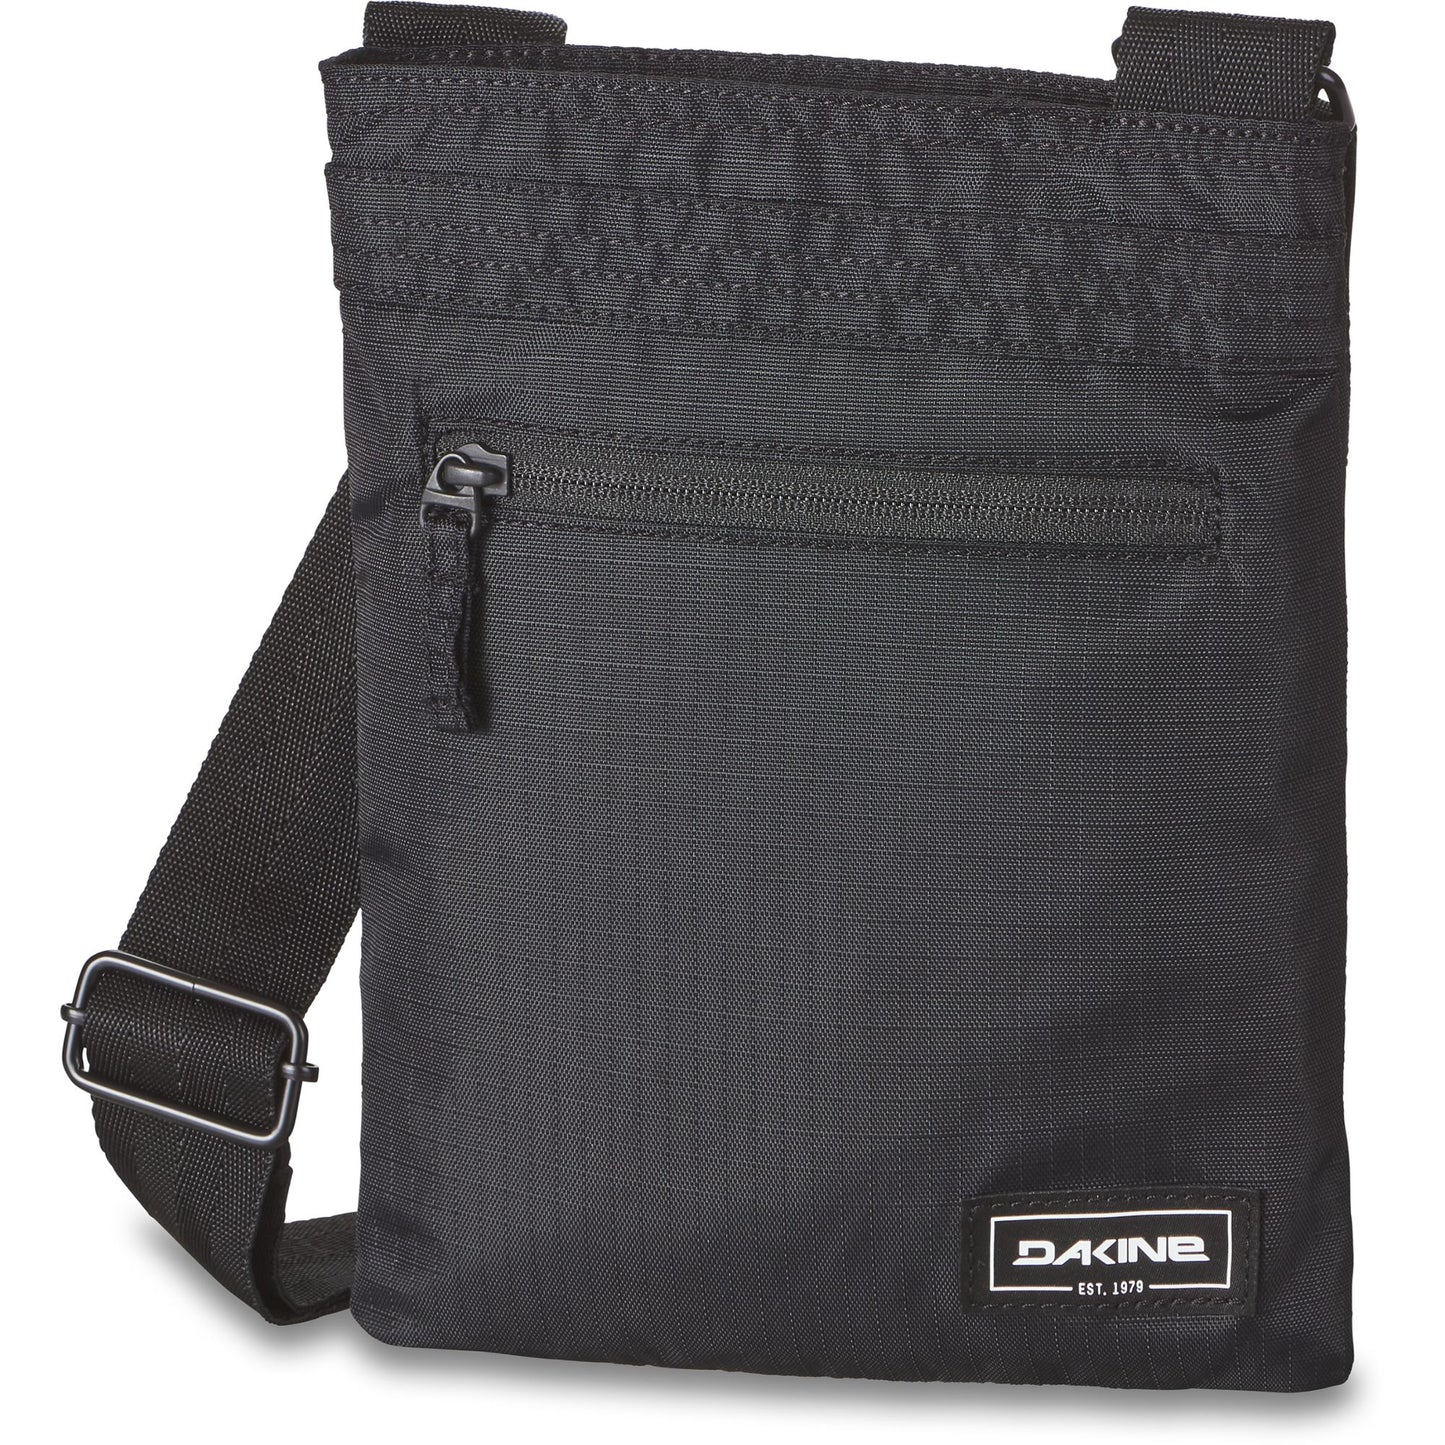 Dakine Jive Bag Black Ripstop OS - Dakine Bags & Packs